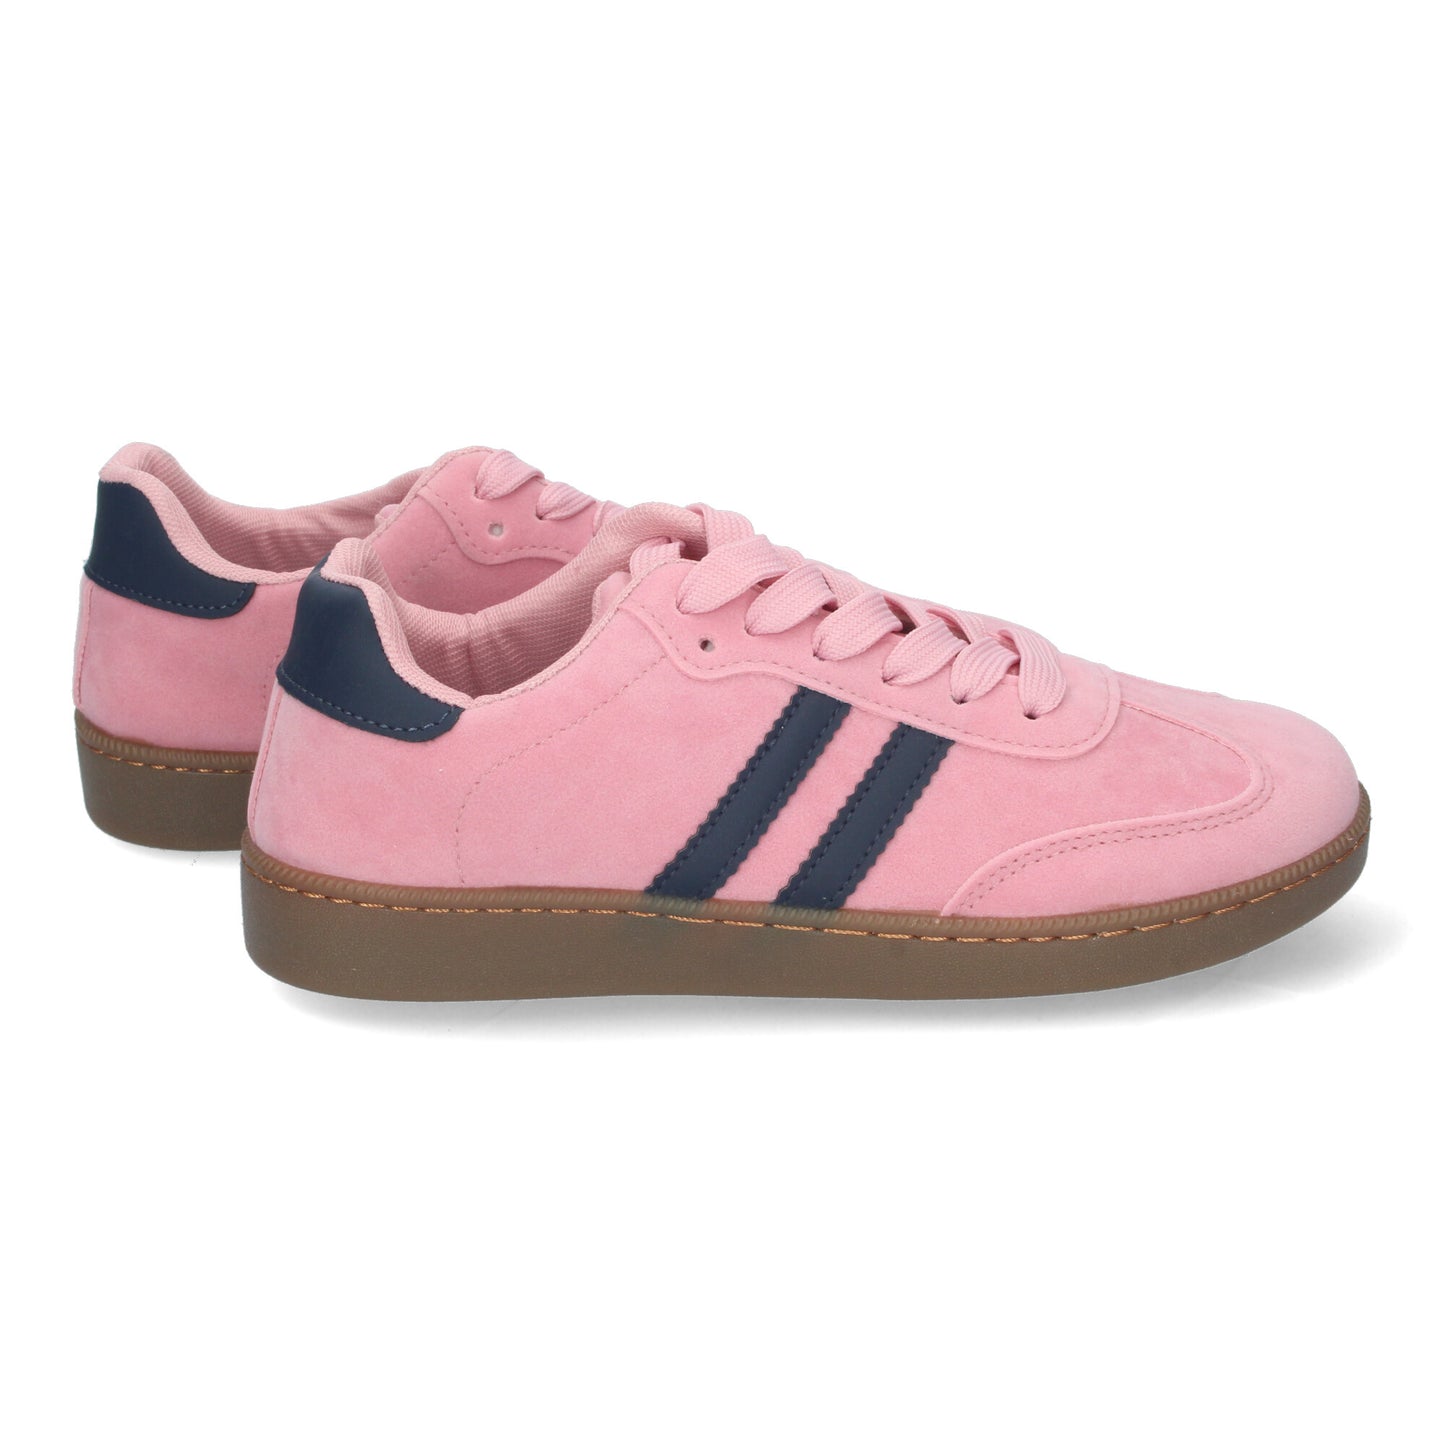 Zapatillas planas deportivas rosas